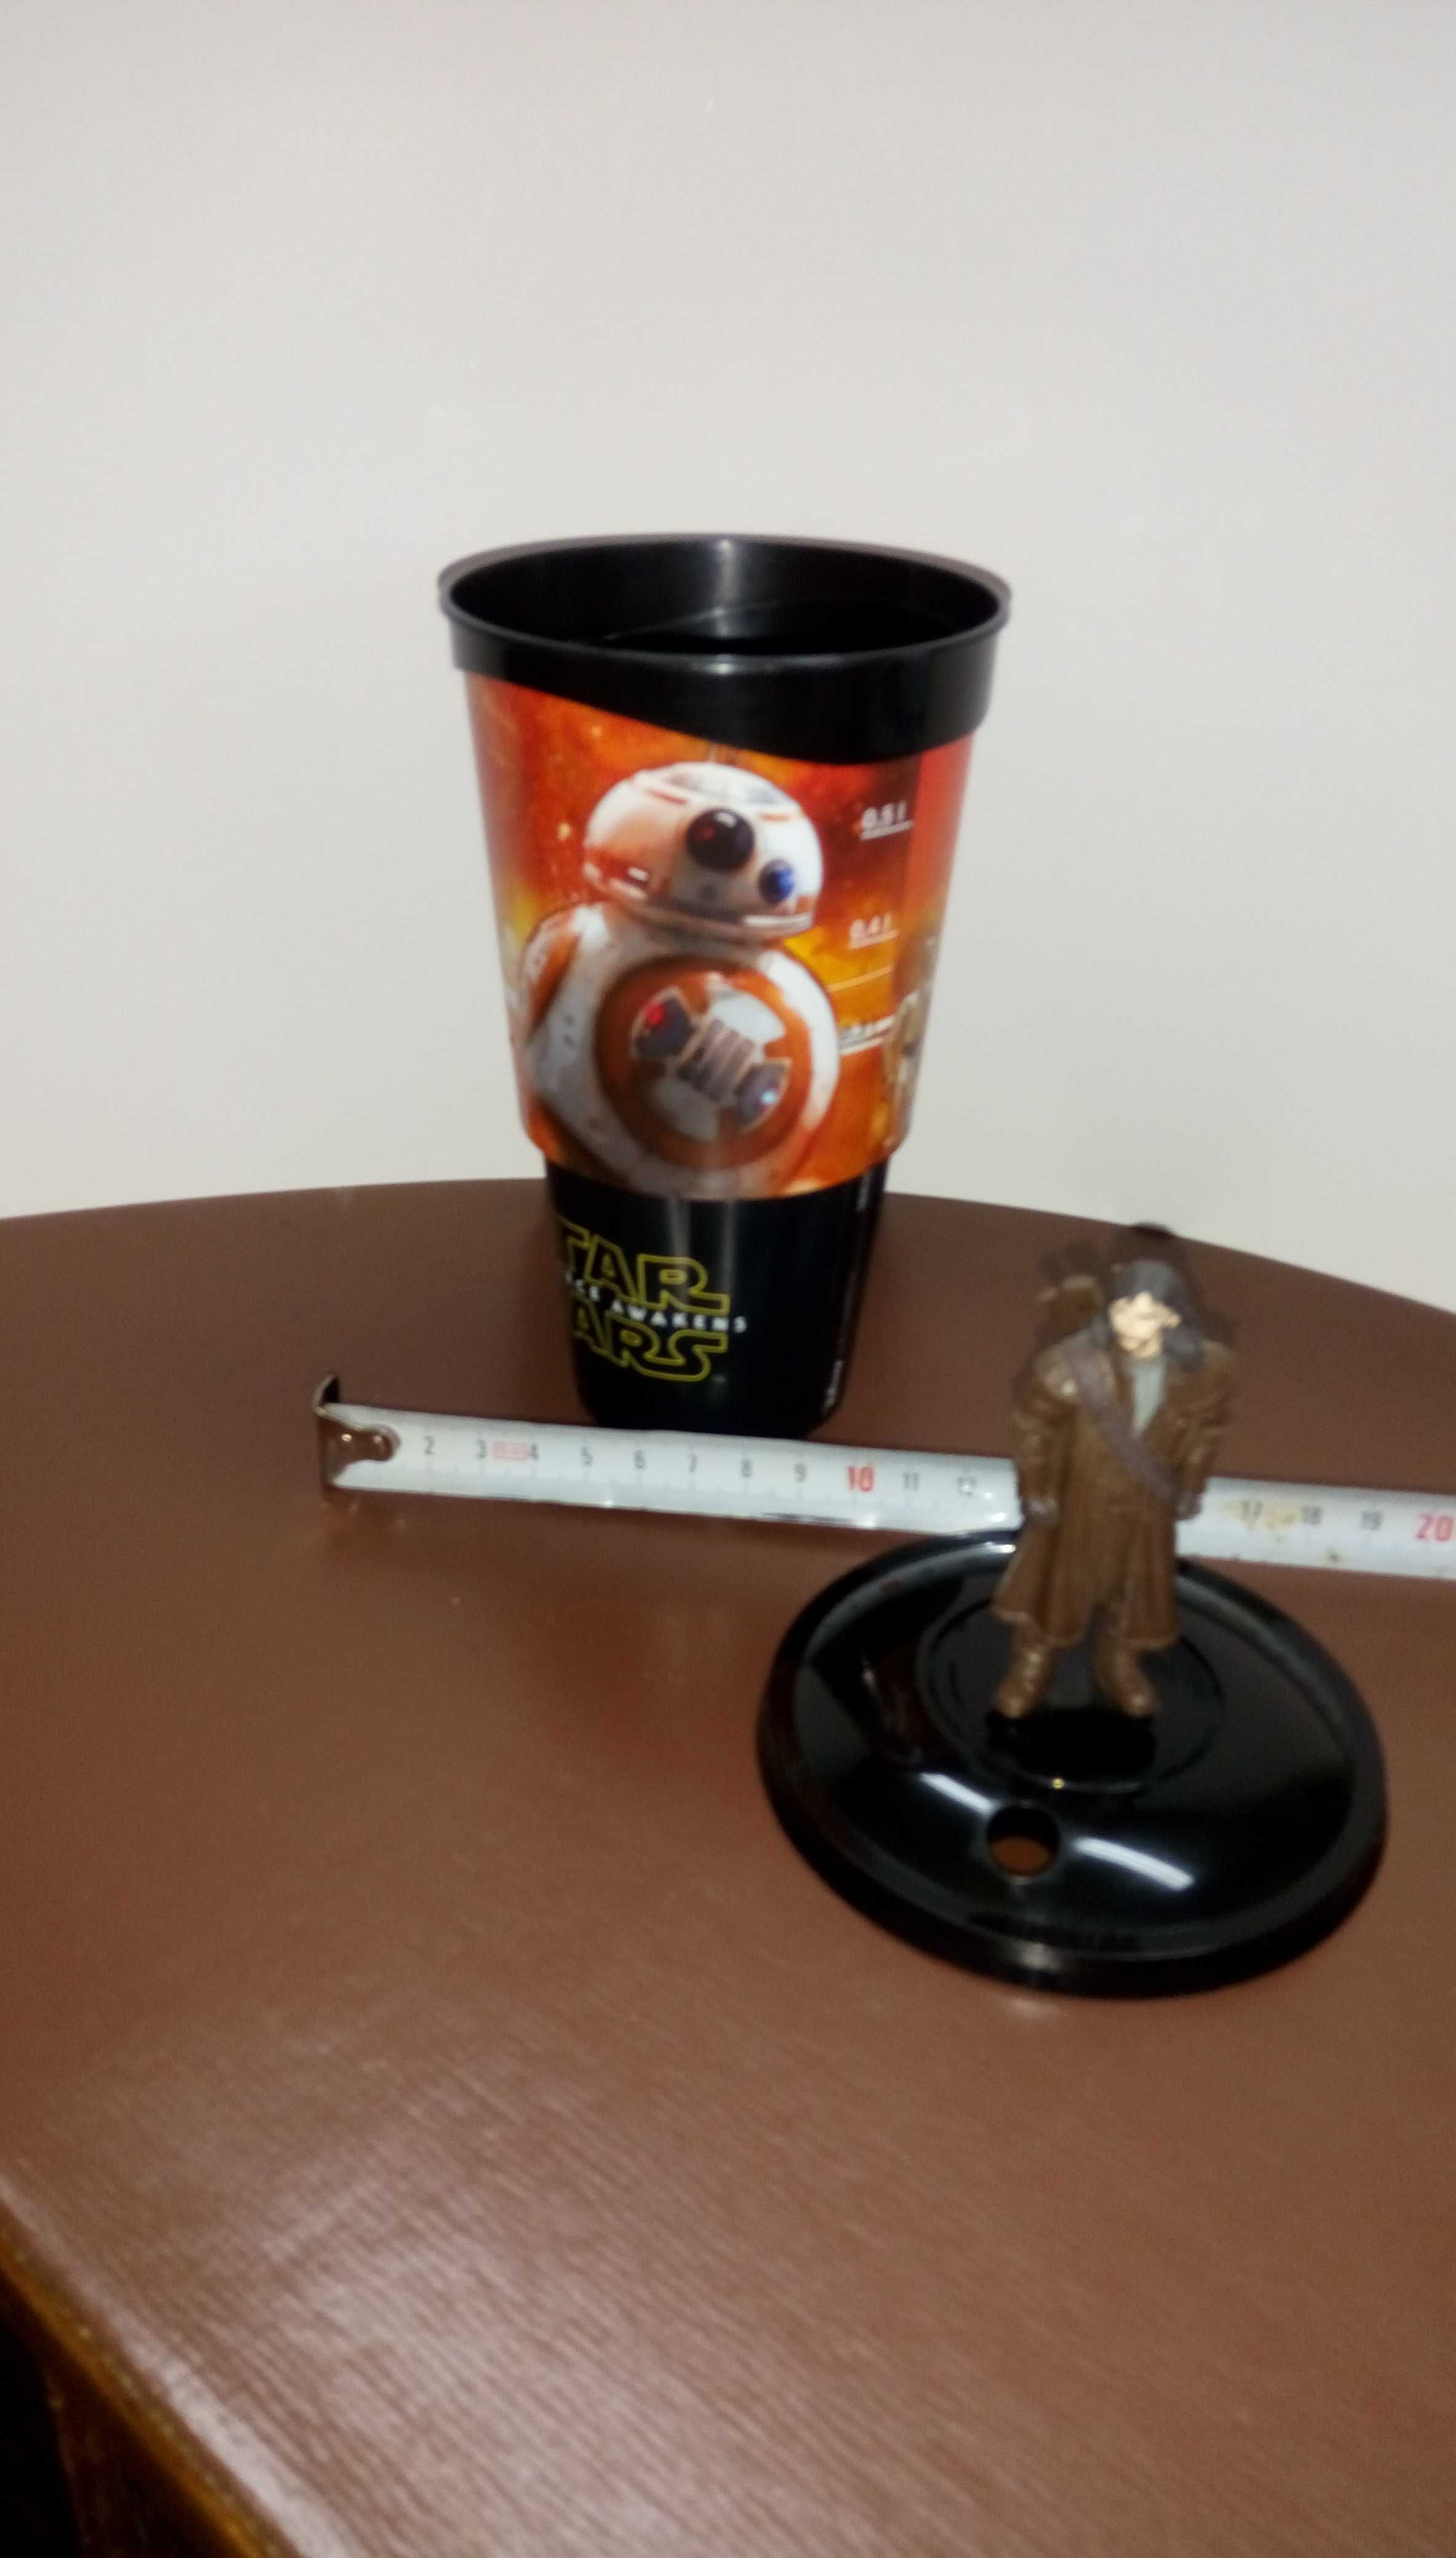 Star Wars филмови колекционерски чаши и фигурка на джуджето Кили